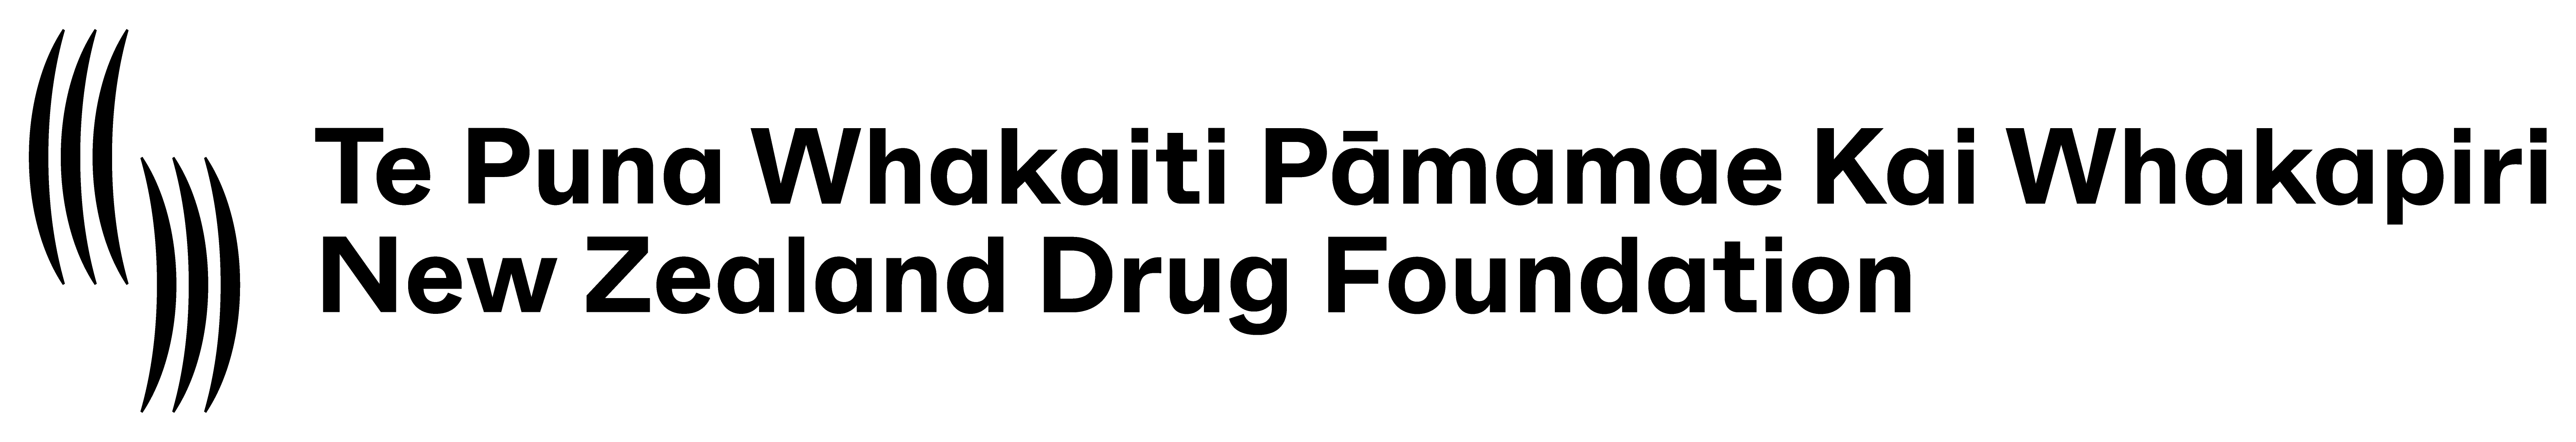 New Zealand Drug Foundation logo